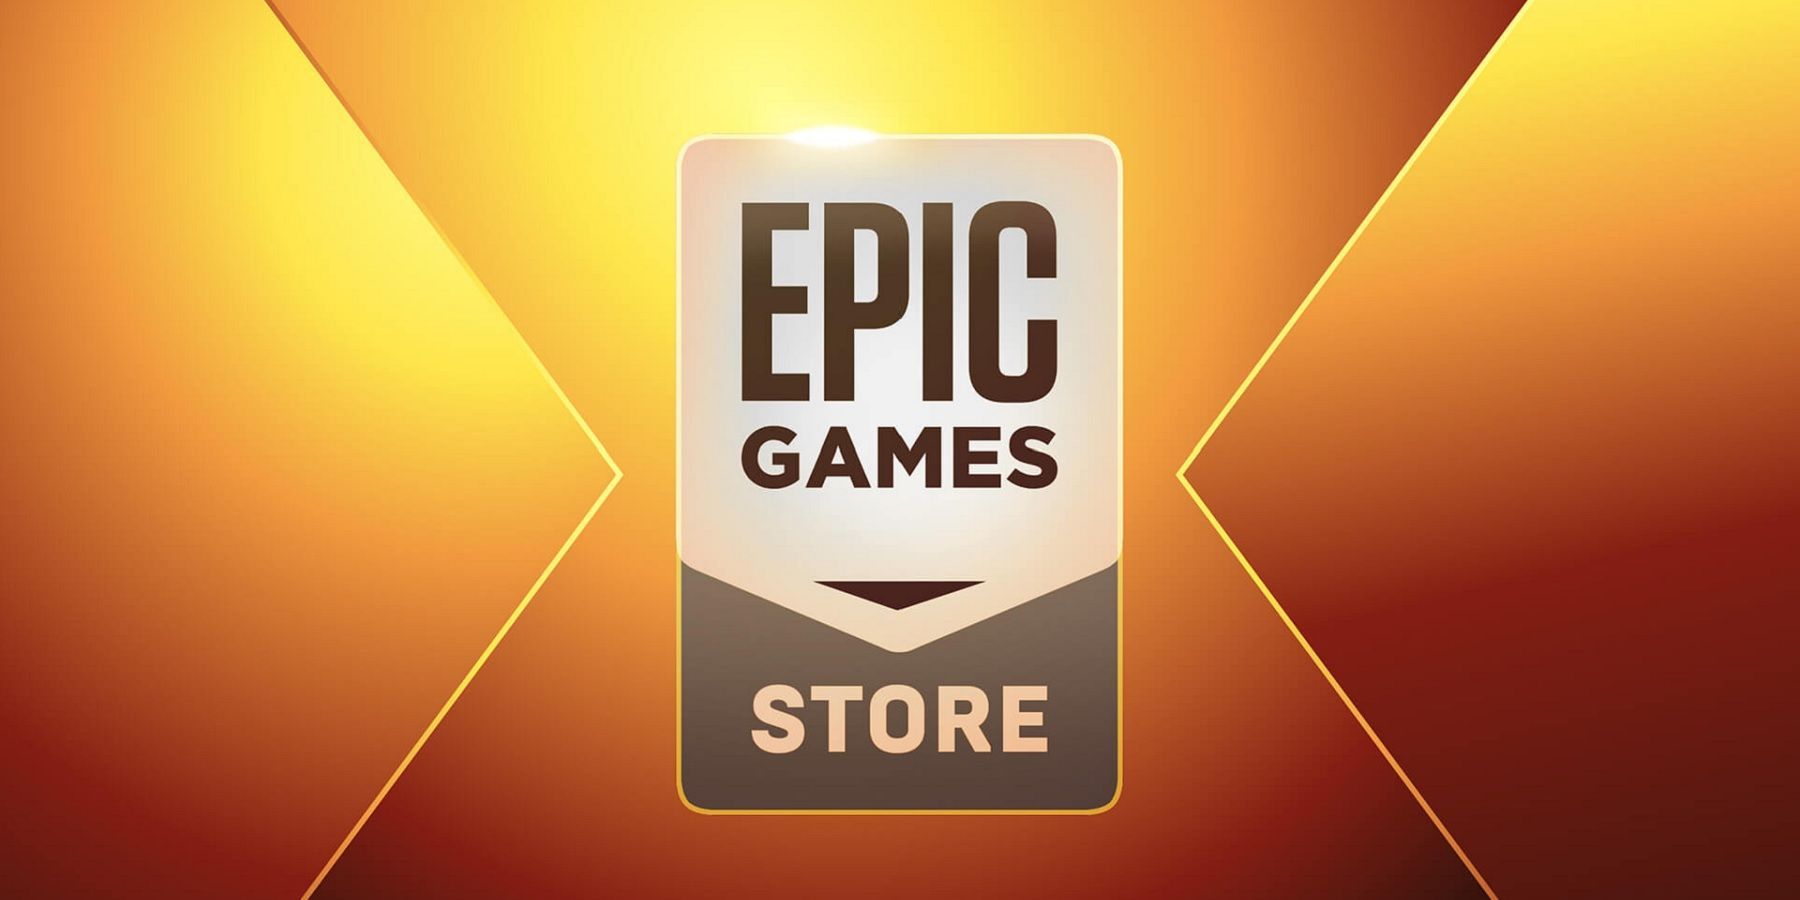 שני המשחקים החינמיים של חנות משחקי Epic ל -15 בספטמבר הסבירו